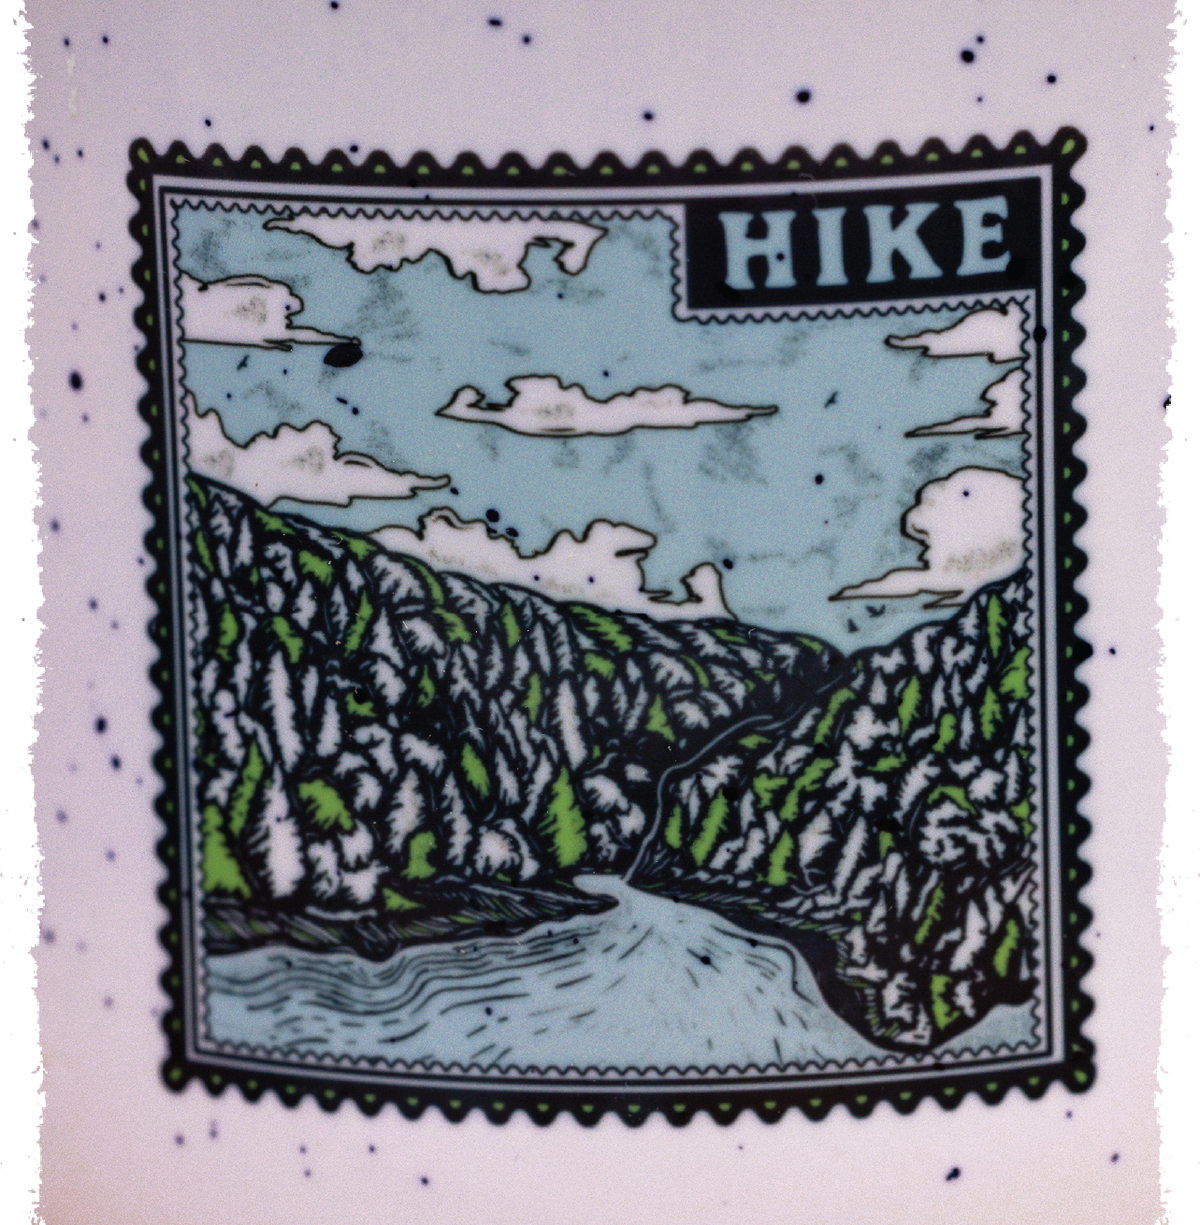 Hike Stamp Mug